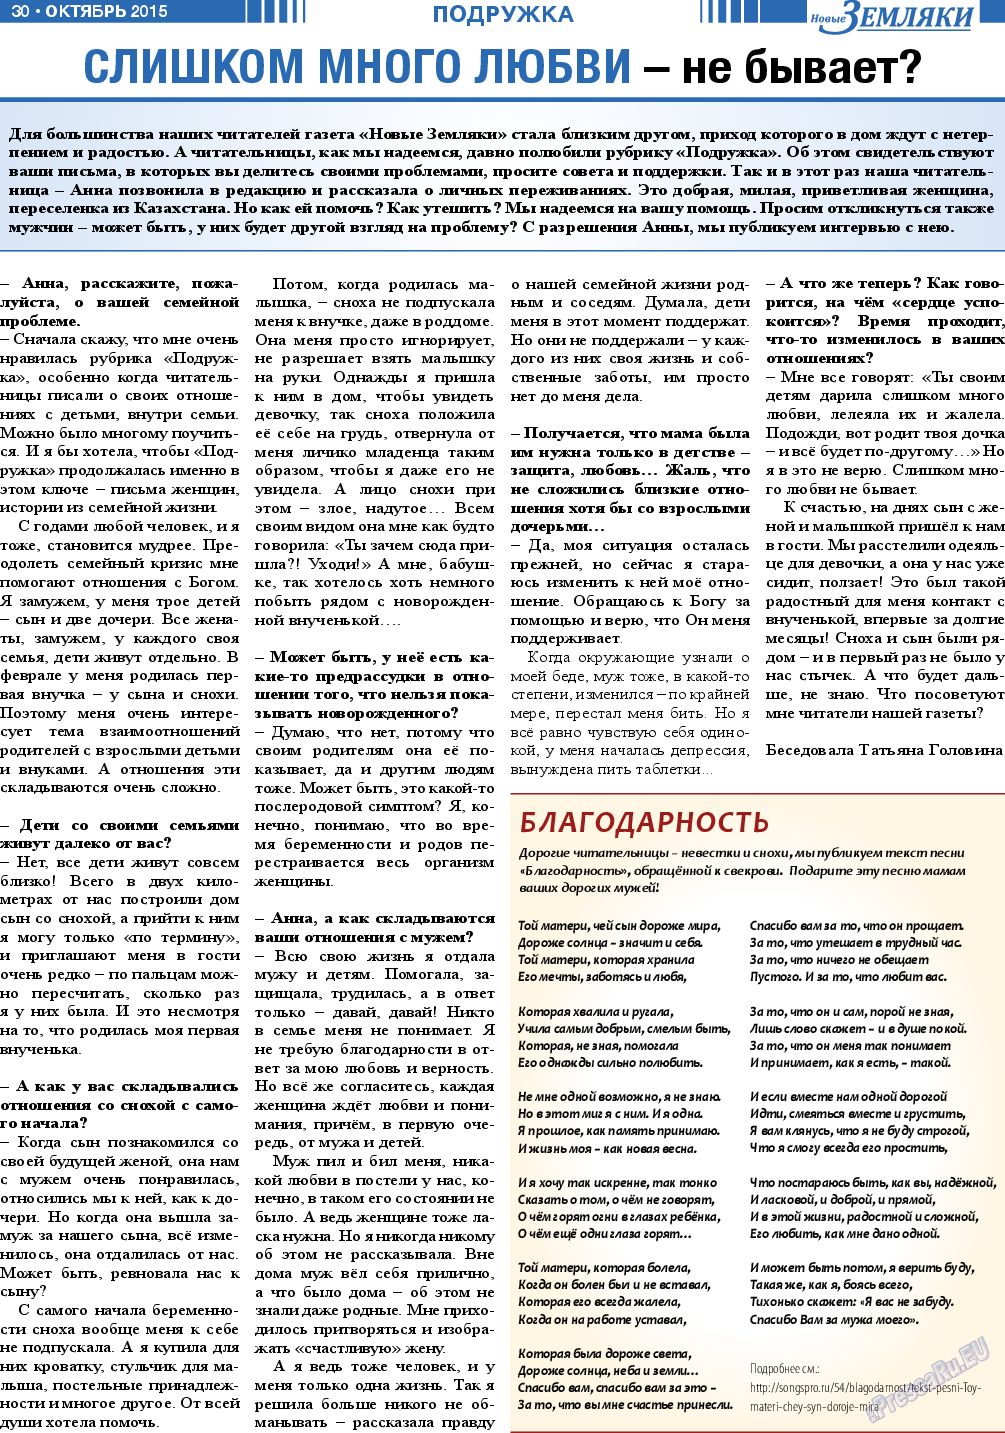 Новые Земляки, газета. 2015 №10 стр.30